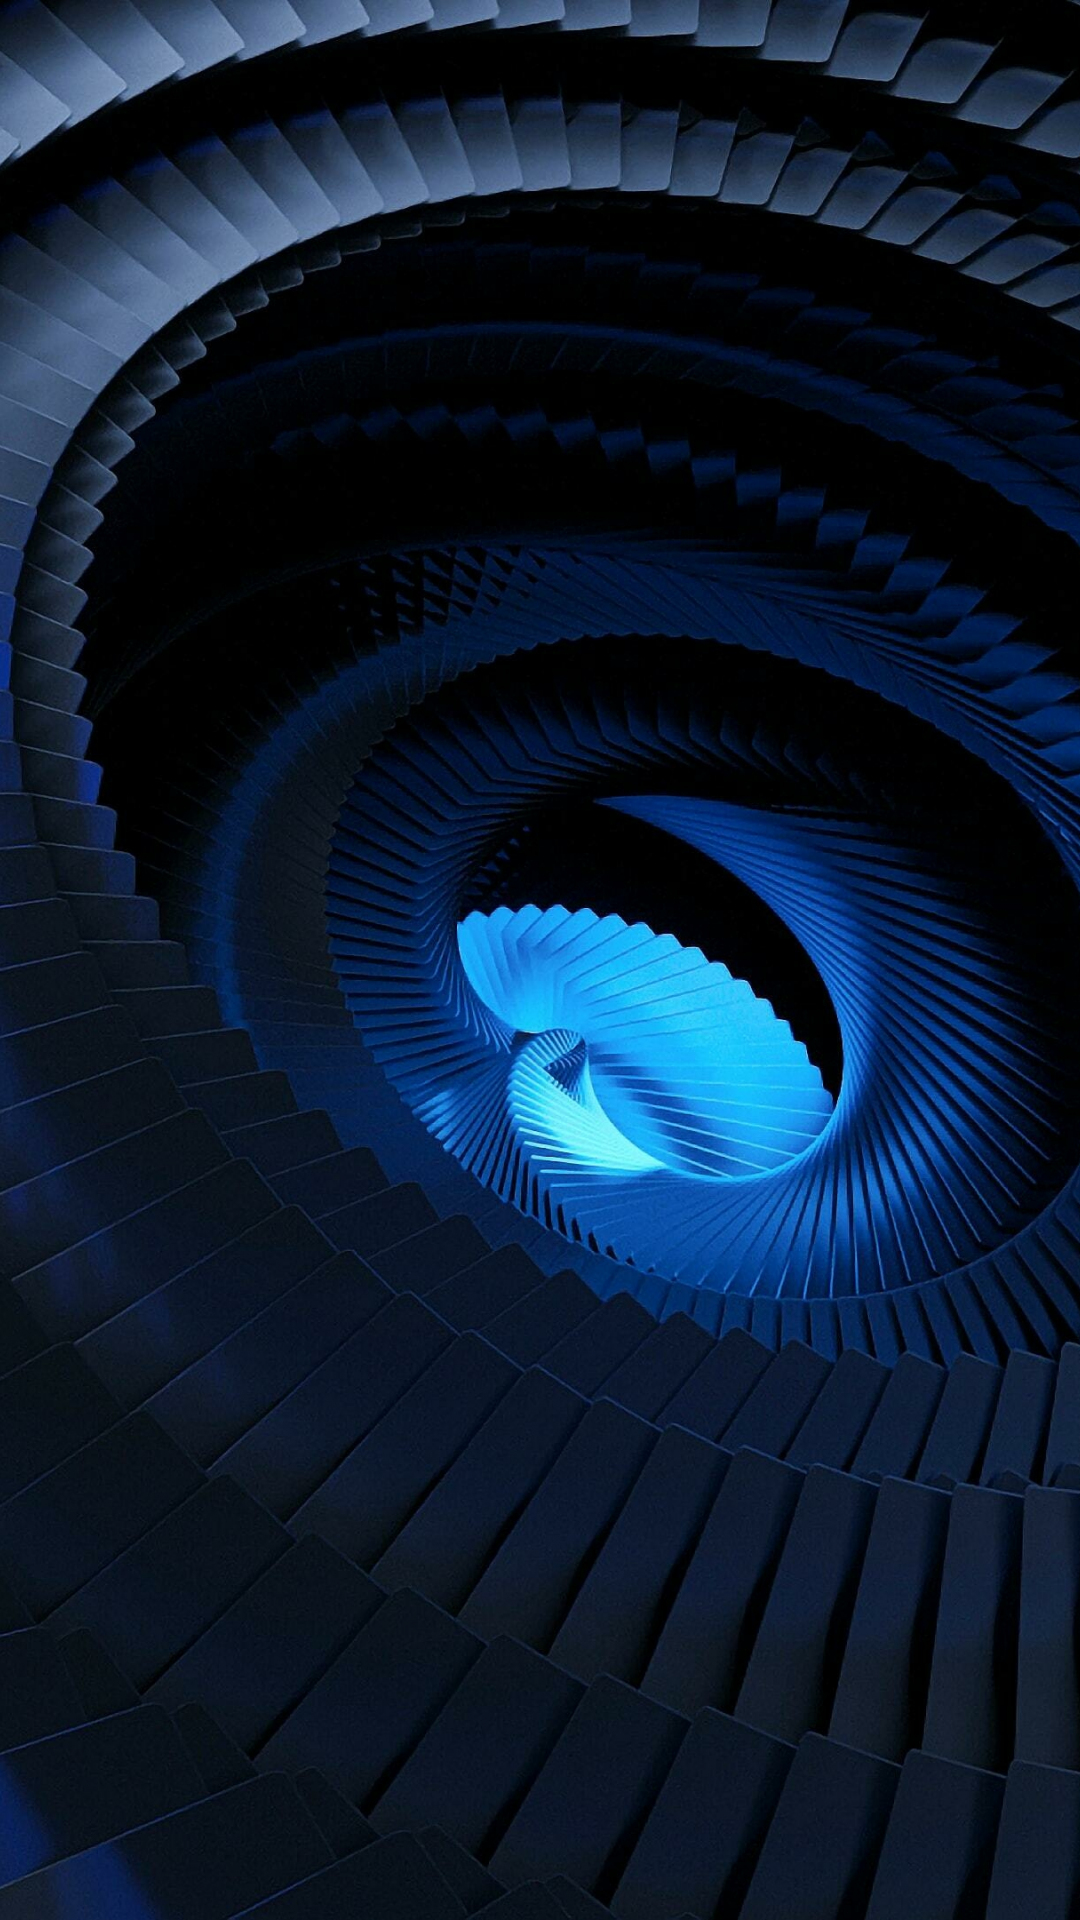 Swirl, blue focal center, abstract, 1080x1920 wallpaper